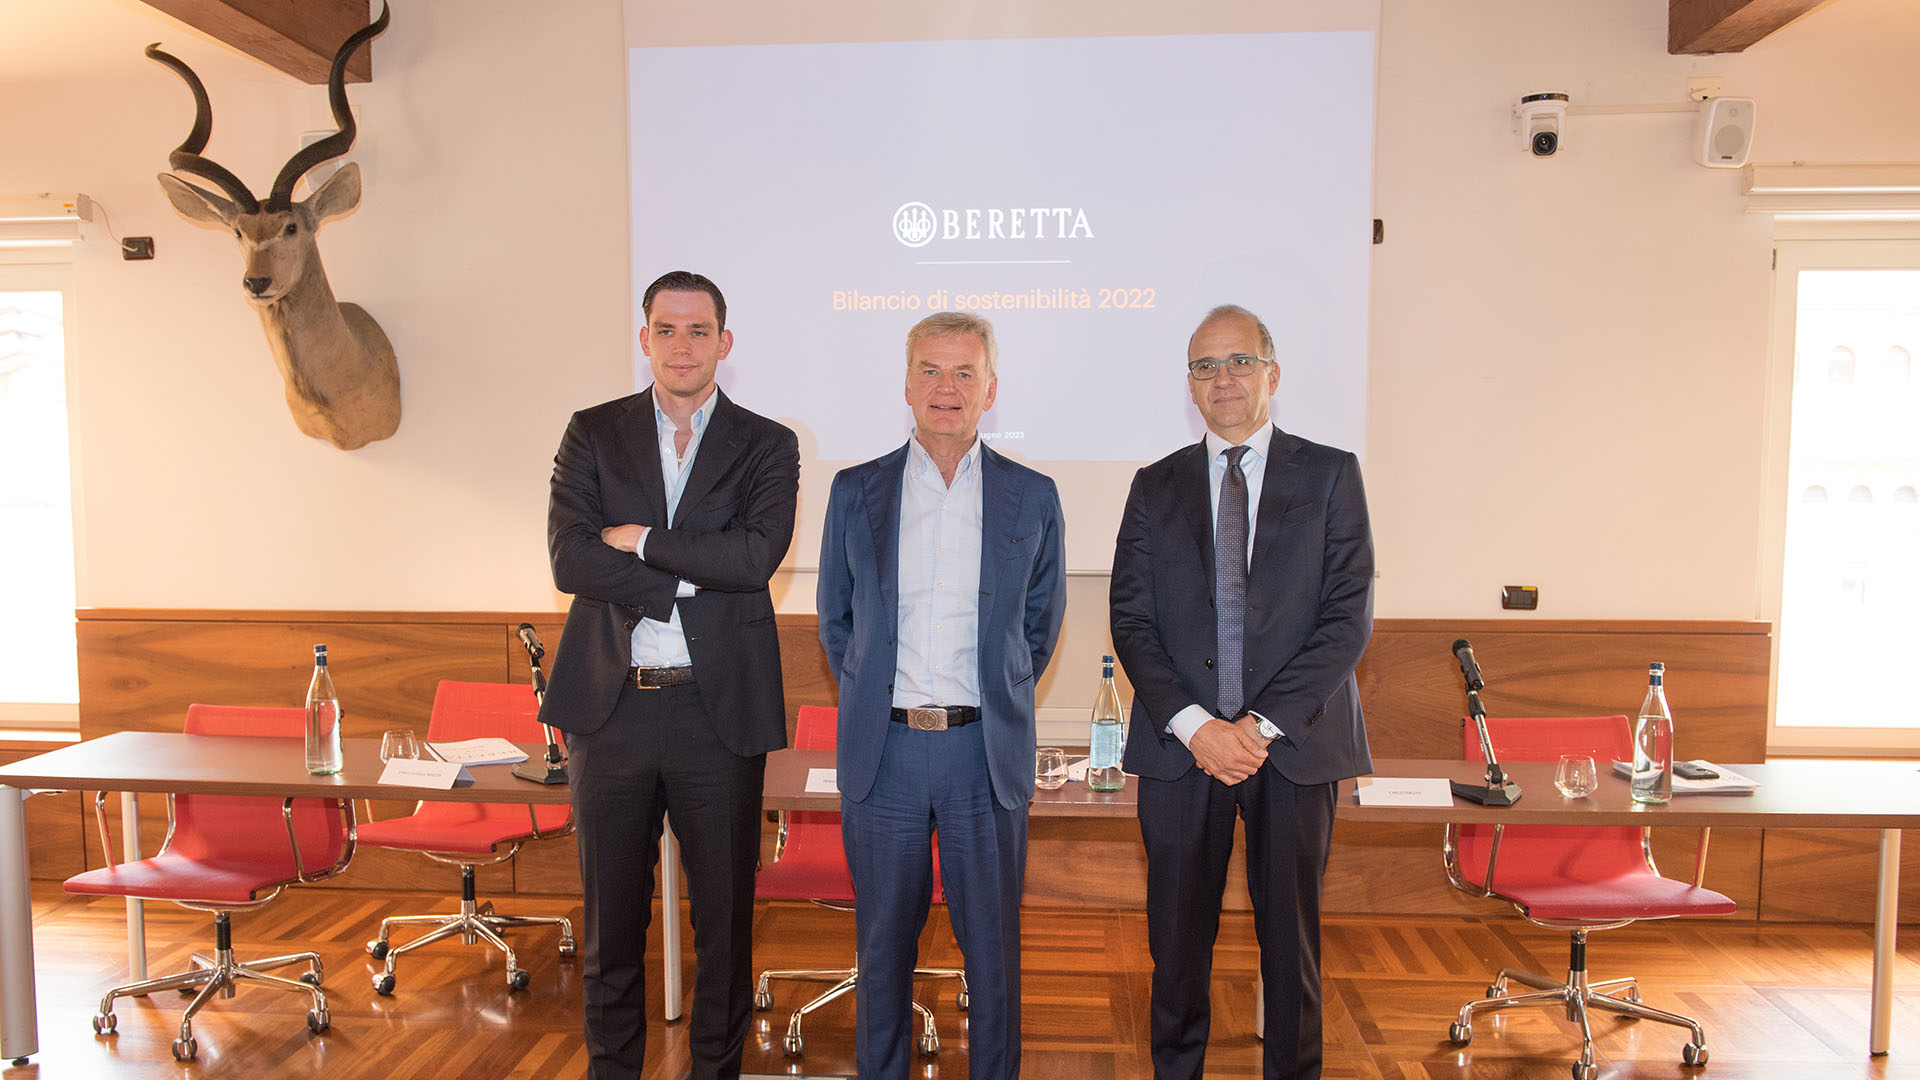 Carlo Ferlito, Franco Gussalli Beretta e Carlo Gussalli Beretta (da destra verso sinistra) hanno presentato il Bilancio di sostenibilit 2022 fornendo un'indicazione sul fatturato del primo semestre 2023